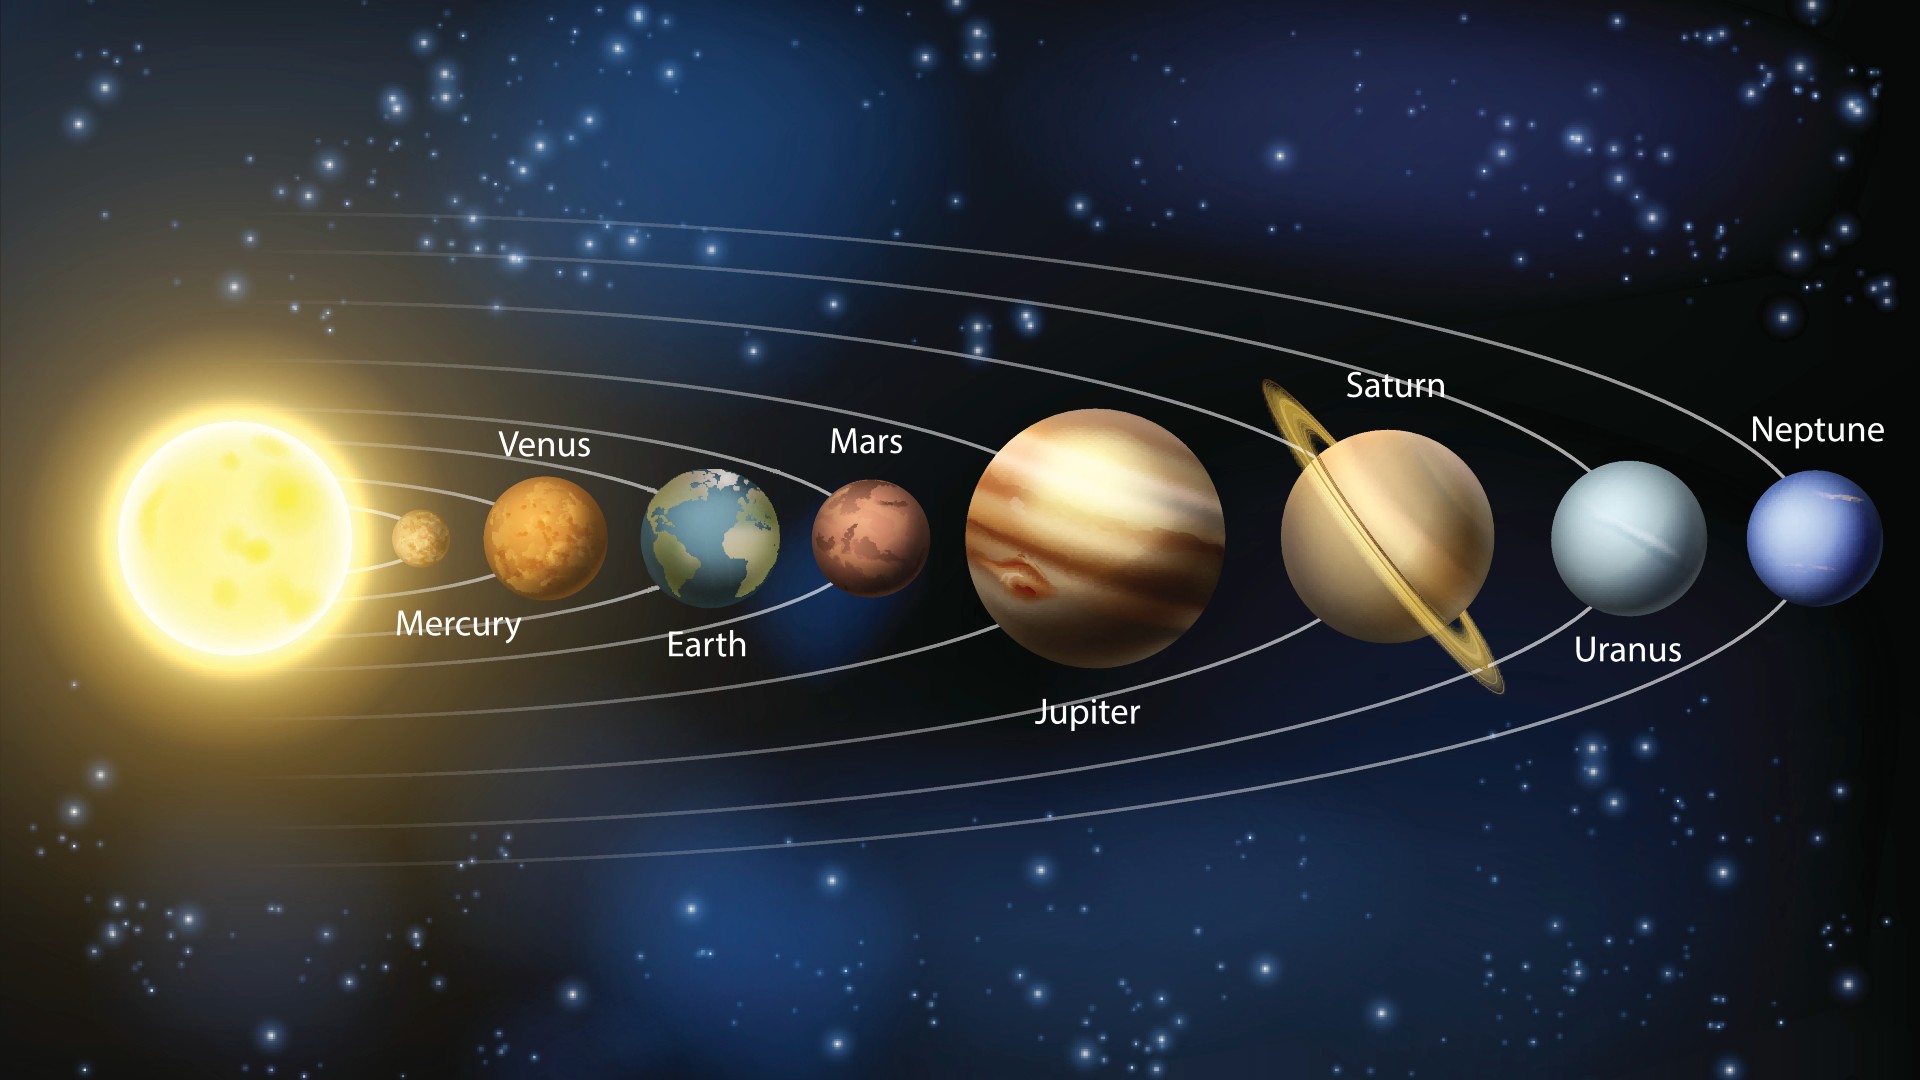 Схема планет нашей Солнечной системы с названиями планет.  Слева направо: Солнце (ярко-желтый), Меркурий (самый маленький, коричневый), Венера (чуть больше, красновато-коричневый), Земля (чуть больше, сине-зеленый), Марс (чуть меньше, красный), Юпитер (самый большой , коричневый и бежевый), Сатурн (немного меньше, бежевый с желтым кольцом вокруг него), Уран (меньше, но больше, чем серая Земля) и Нептун (чуть меньше, синий).  Есть также белые кольца, показывающие орбиту каждой планеты.